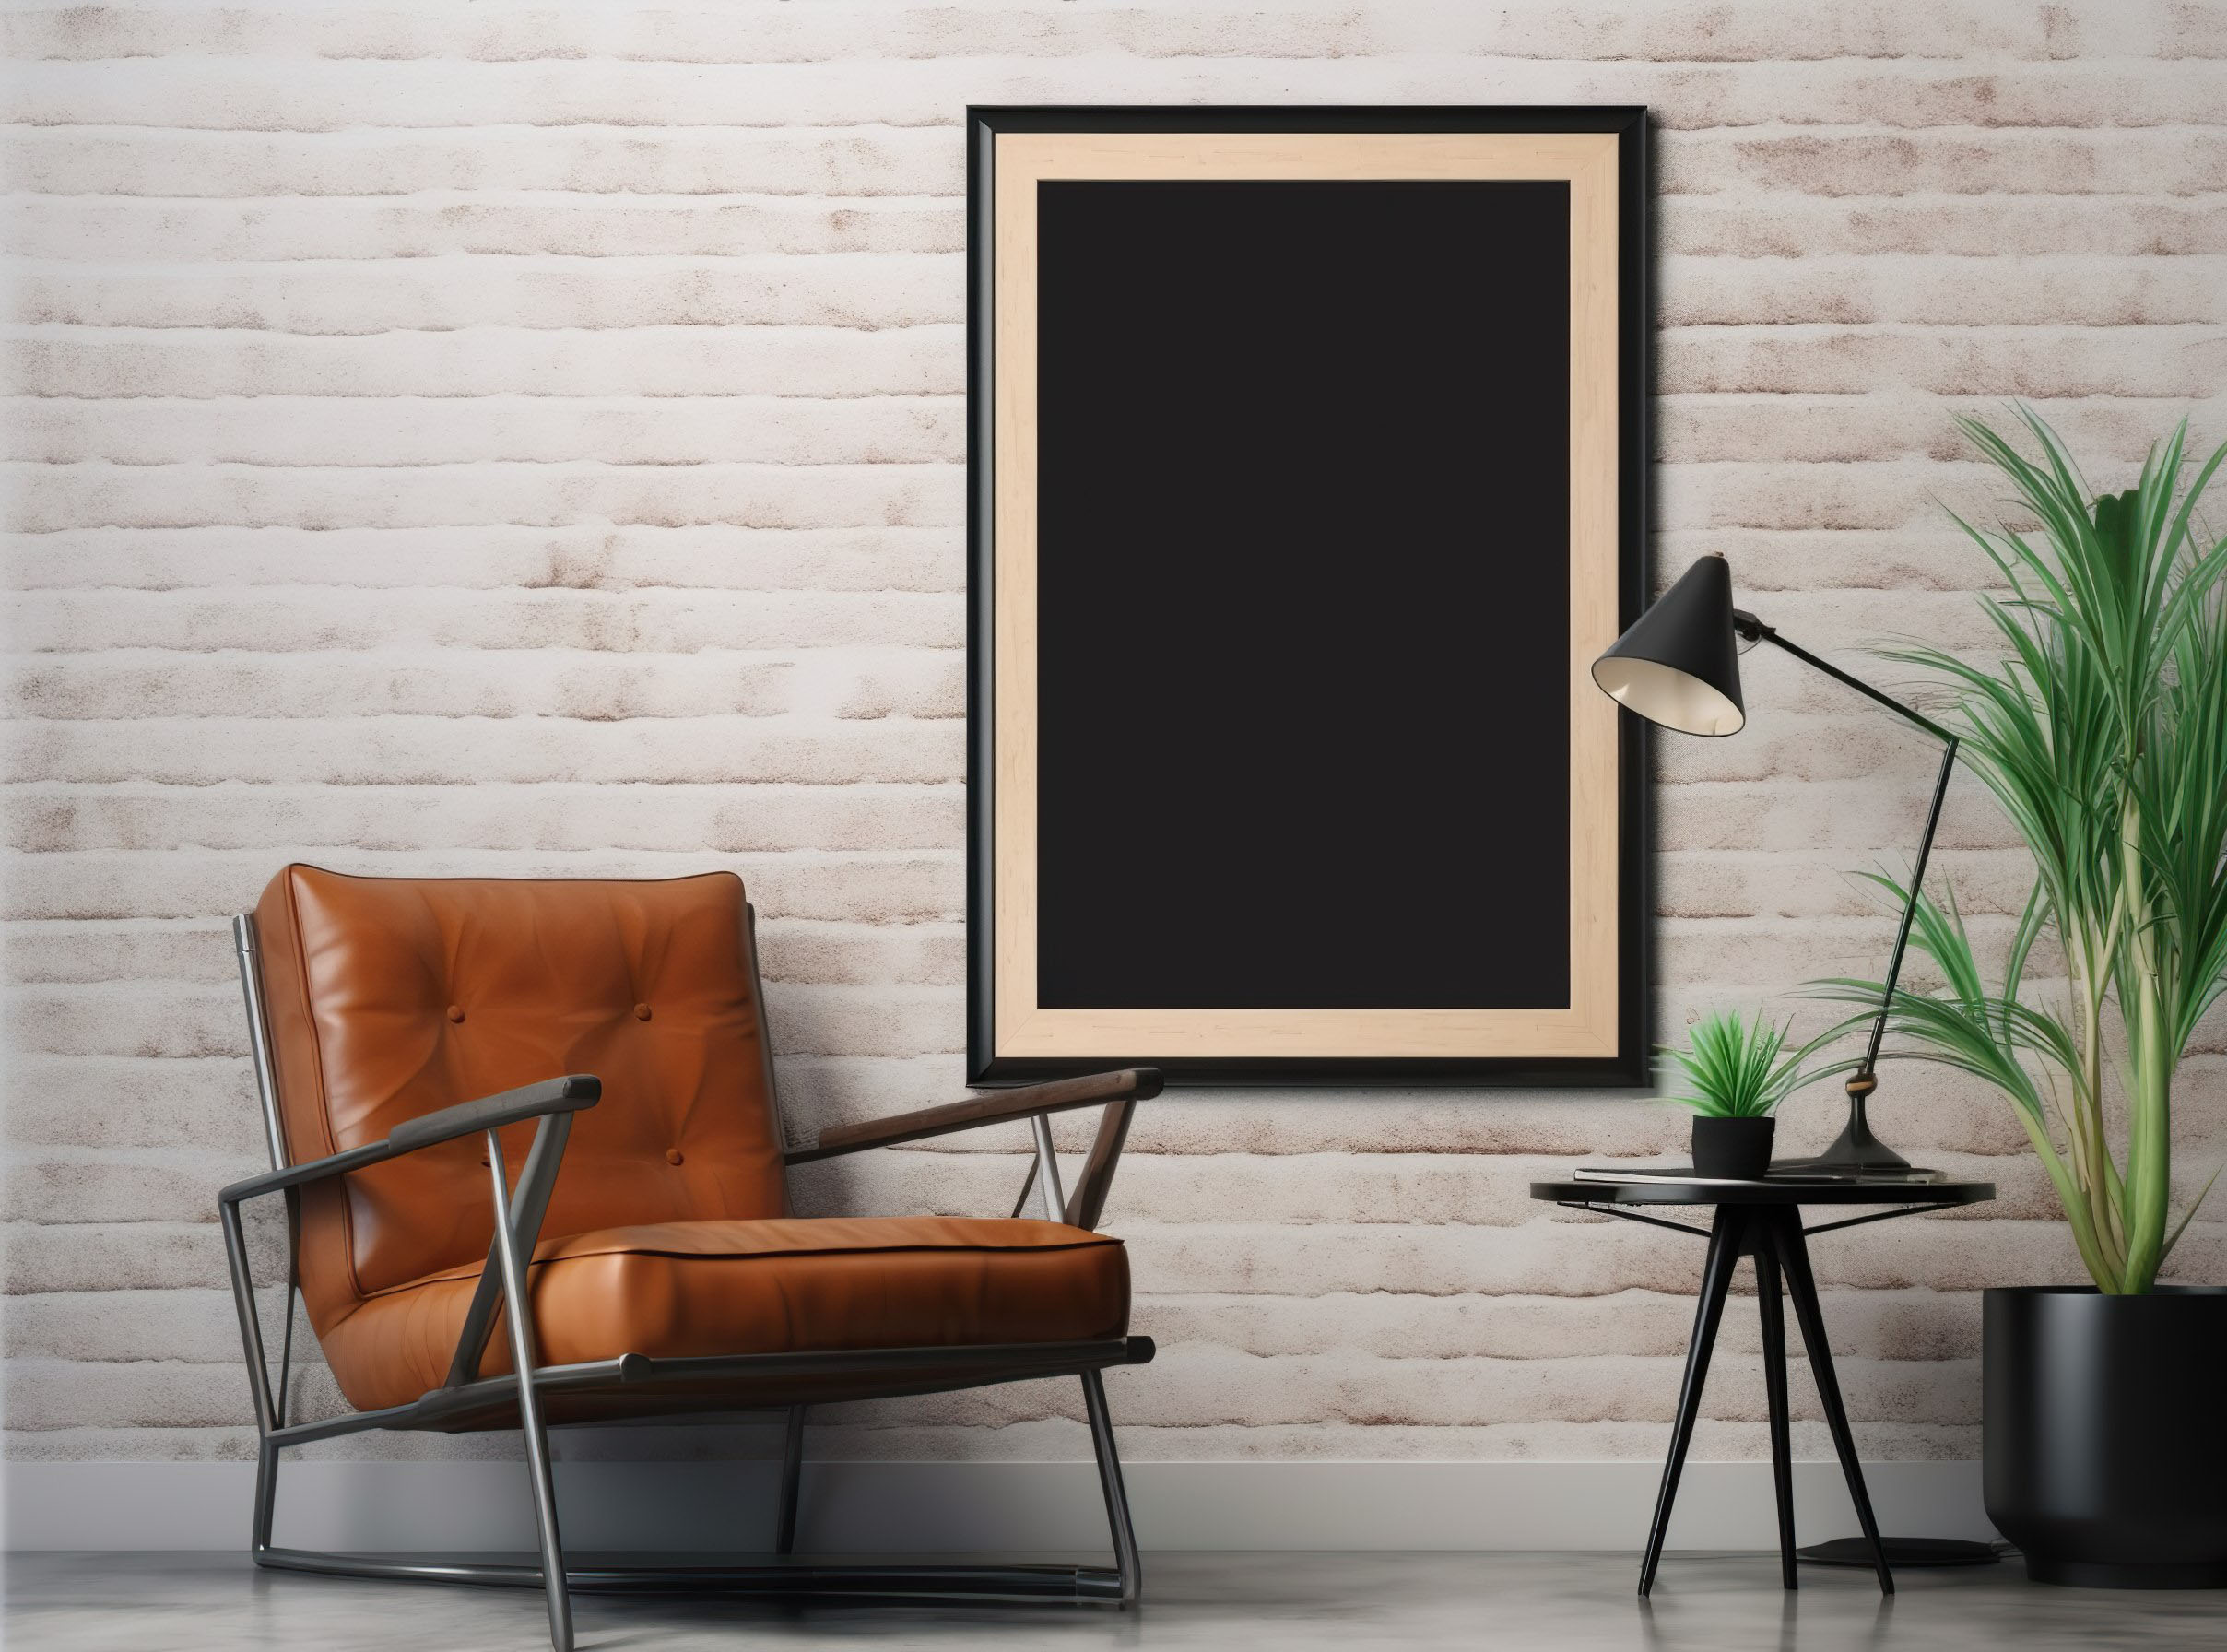 Mock up poster frame in modern interior background, living room, 3D render, 3D illustration